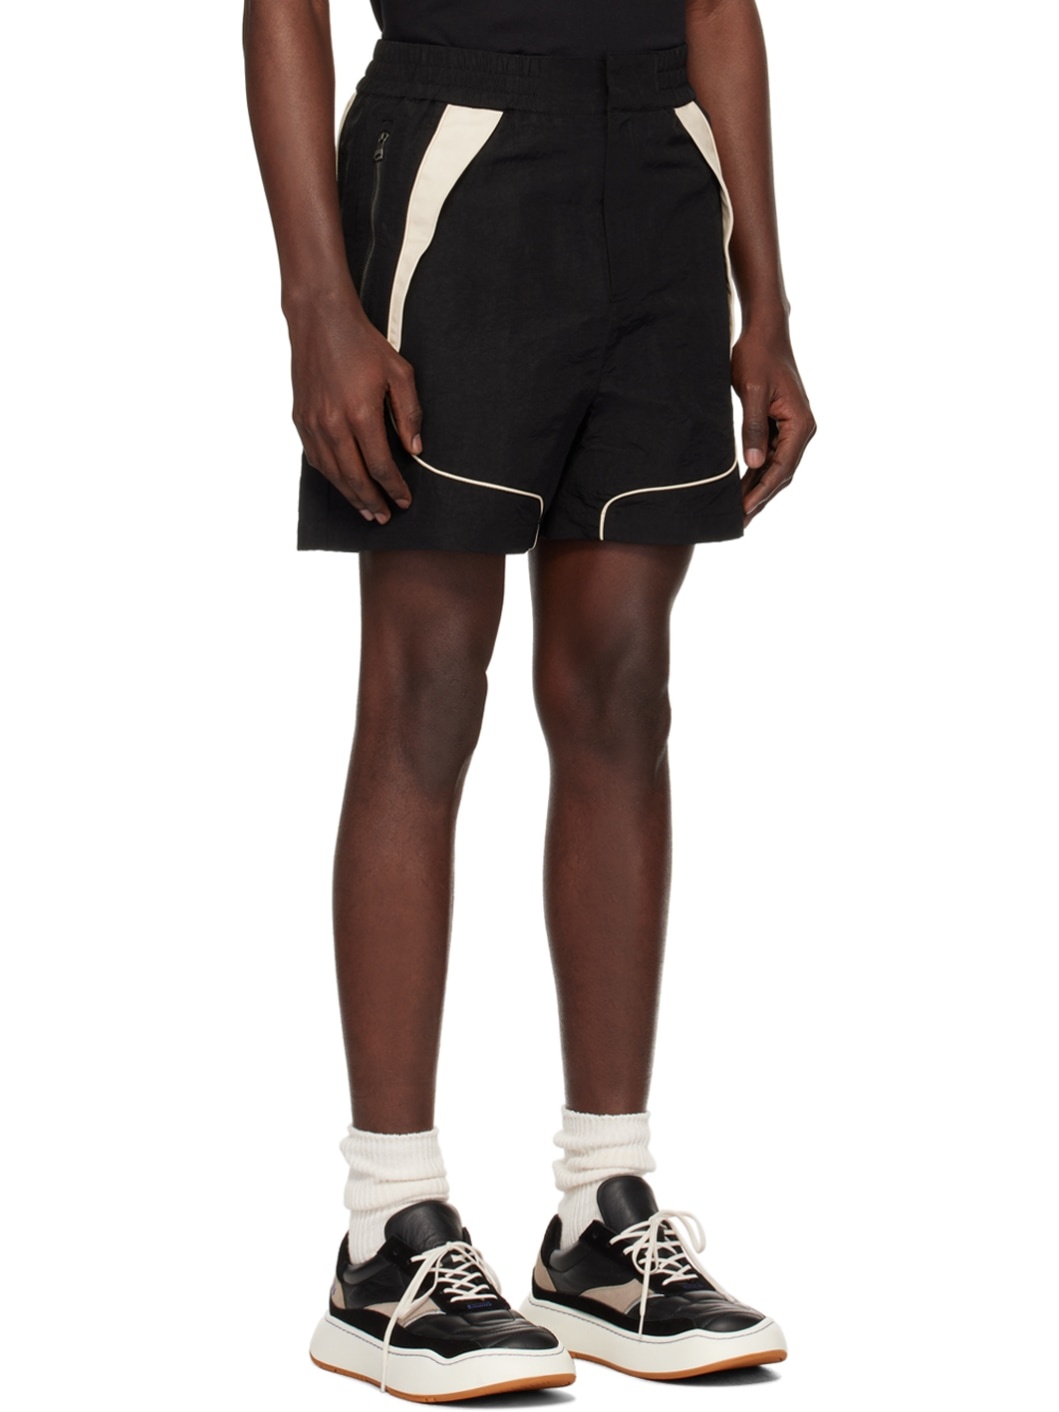 Black Trim Shorts - 2